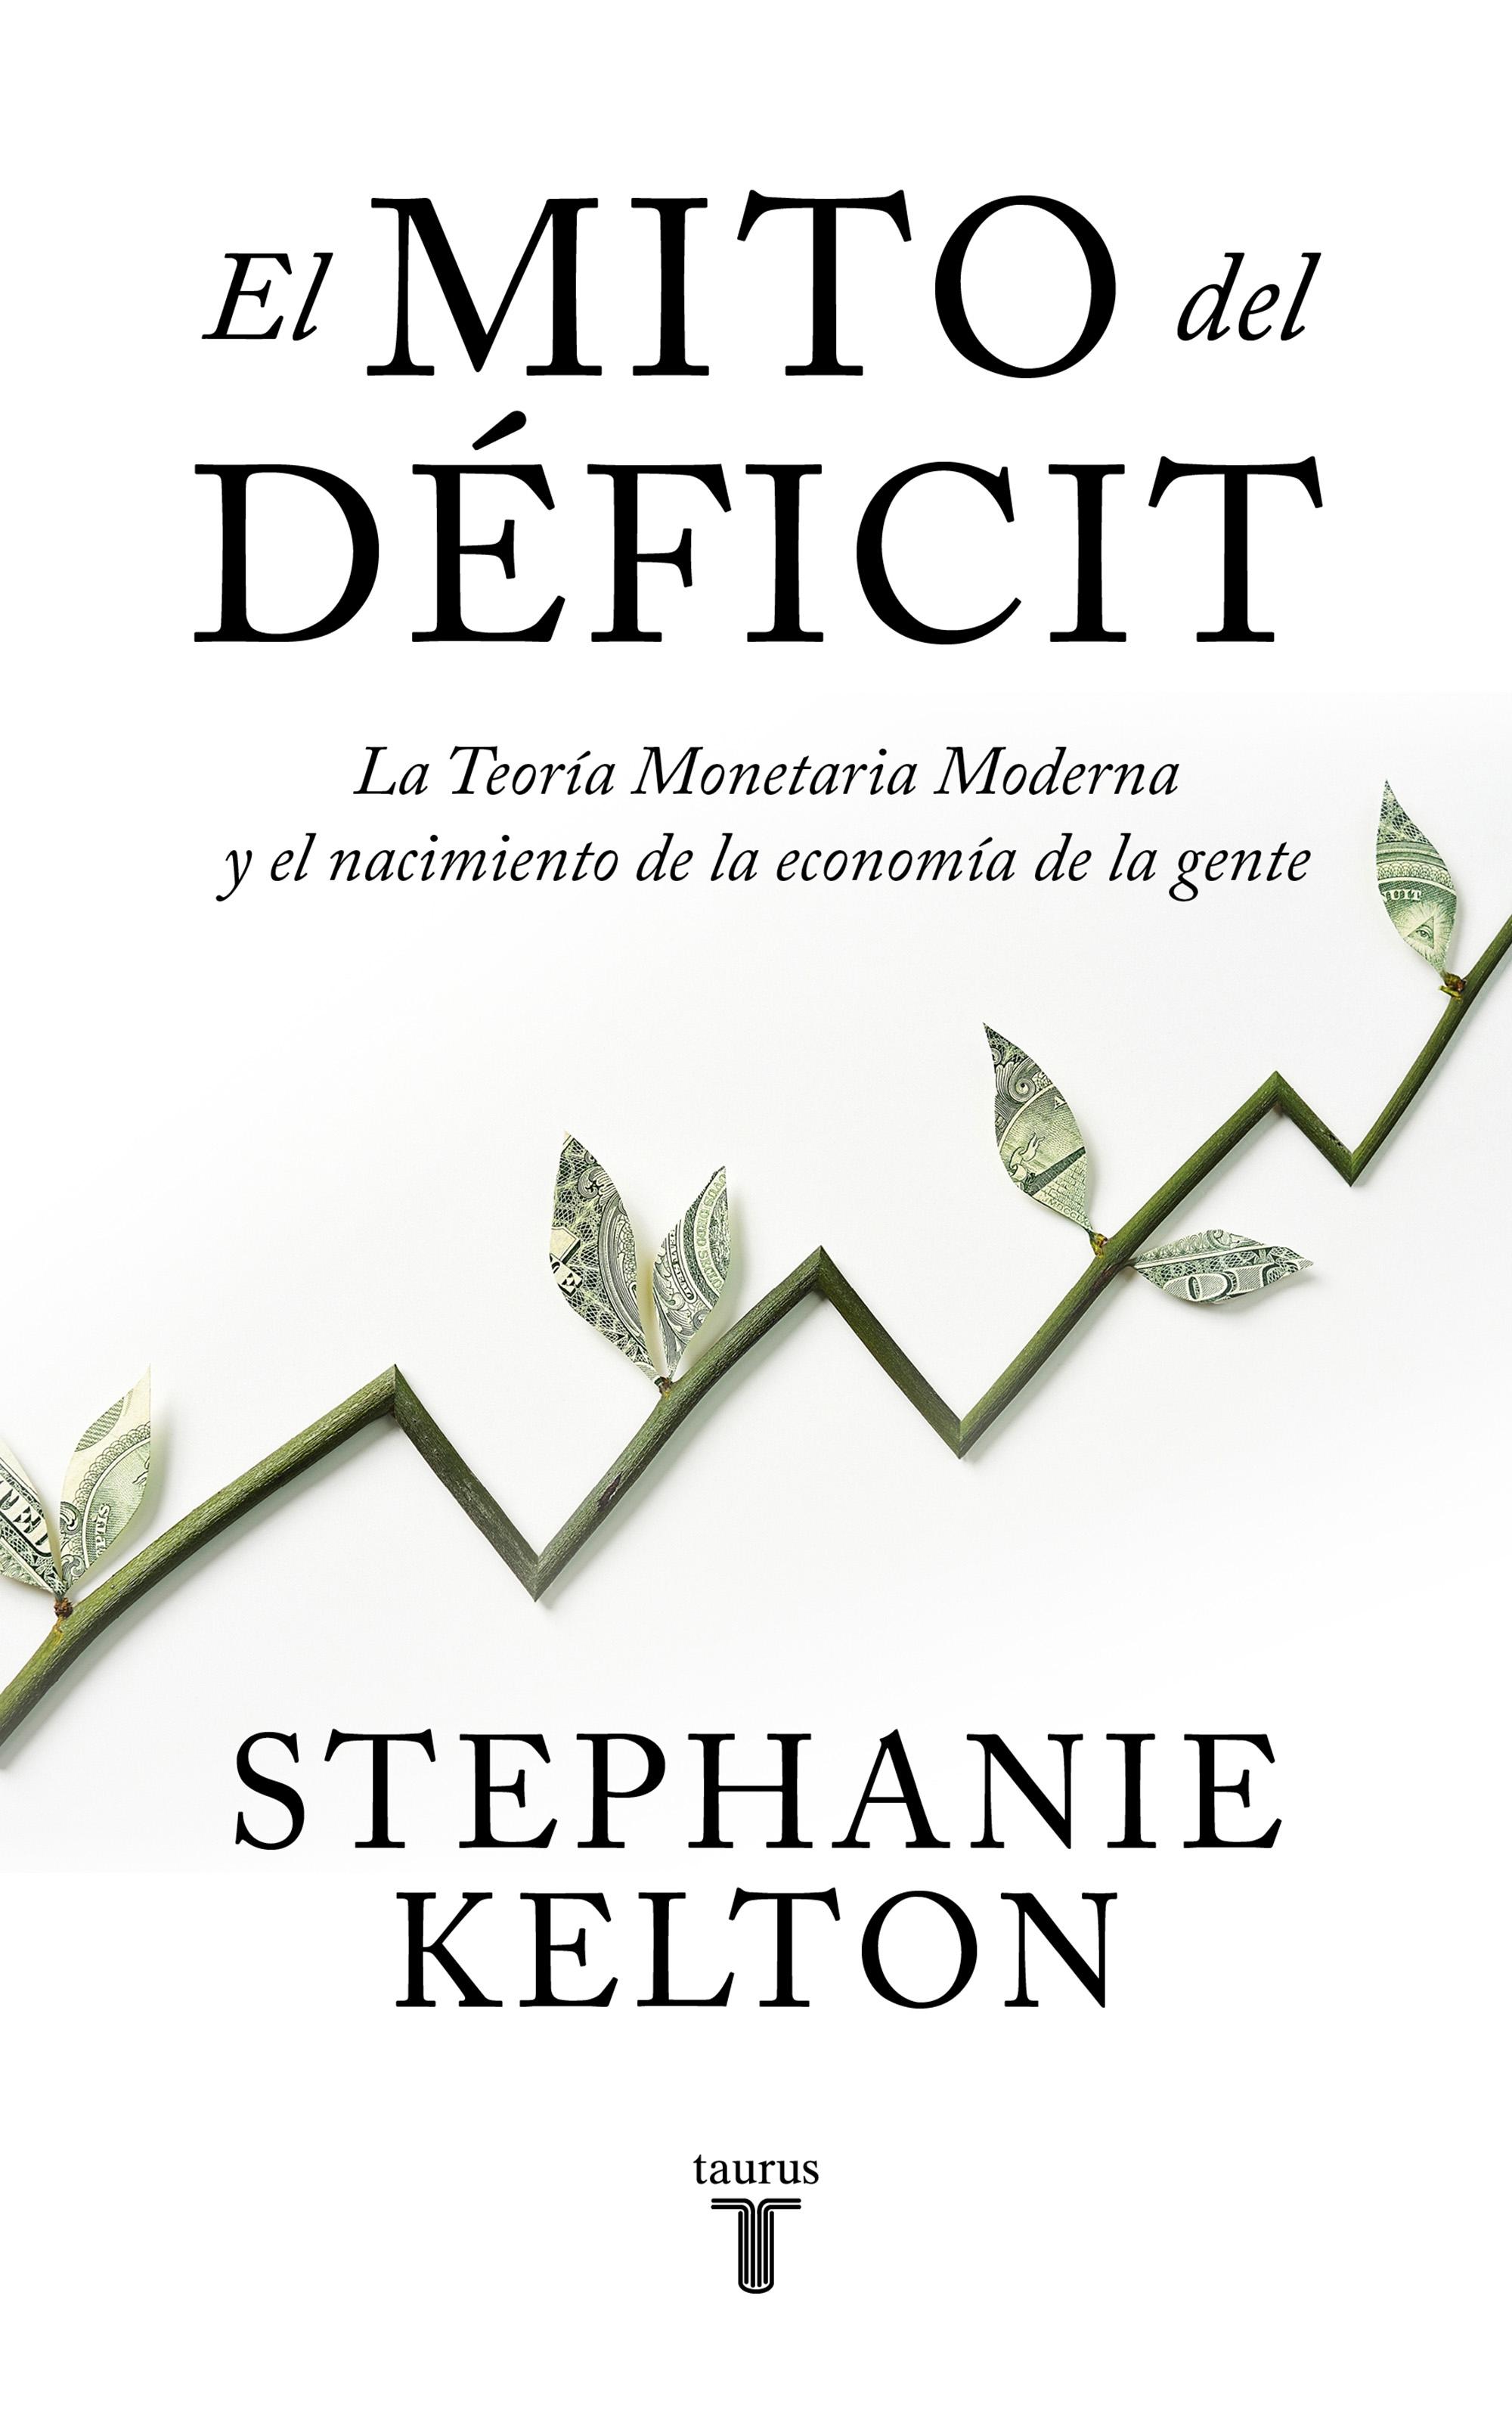 El Mito del Déficit "La Teoría Monetaria Moderna y el Nacimiento de la Economía de la Gente"